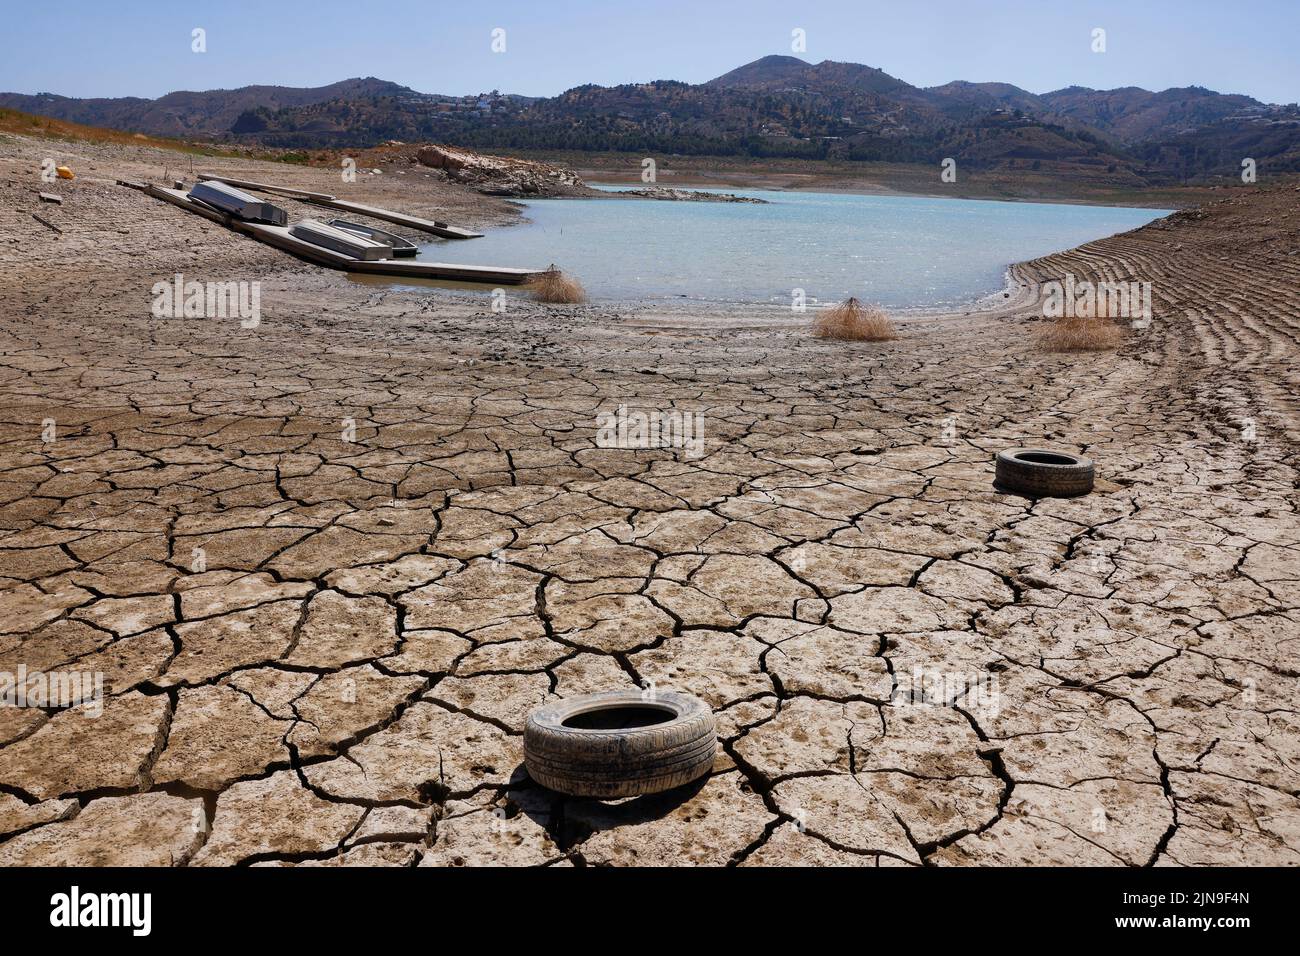 Les pneus se trouvent sur le sol fissuré du réservoir de la Vinuela lors d'une grave sécheresse à la Vinuela, près de Malaga, dans le sud de l'Espagne 8 août 2022. Une période de sécheresse prolongée et une chaleur extrême qui ont fait de juillet dernier le mois le plus chaud en Espagne depuis au moins 1961, ont laissé les réservoirs espagnols à seulement 40% de leur capacité en moyenne début août, bien en dessous de la moyenne sur dix ans d'environ 60%, indique les données officielles.REUTERS/Jon Nazca Banque D'Images